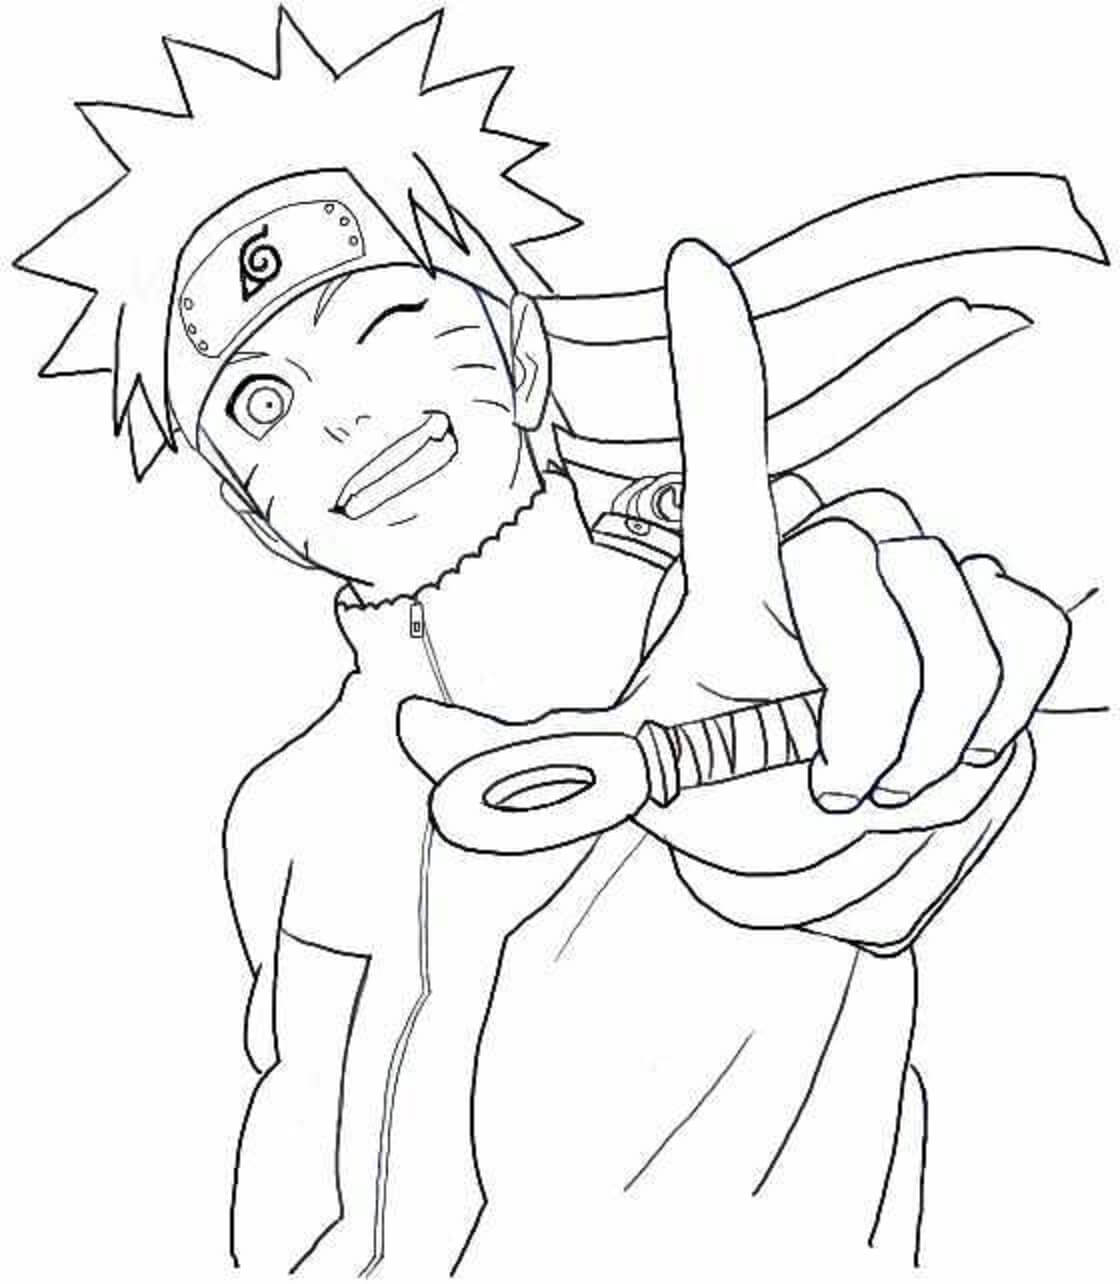 Grappig Naruto-gezicht